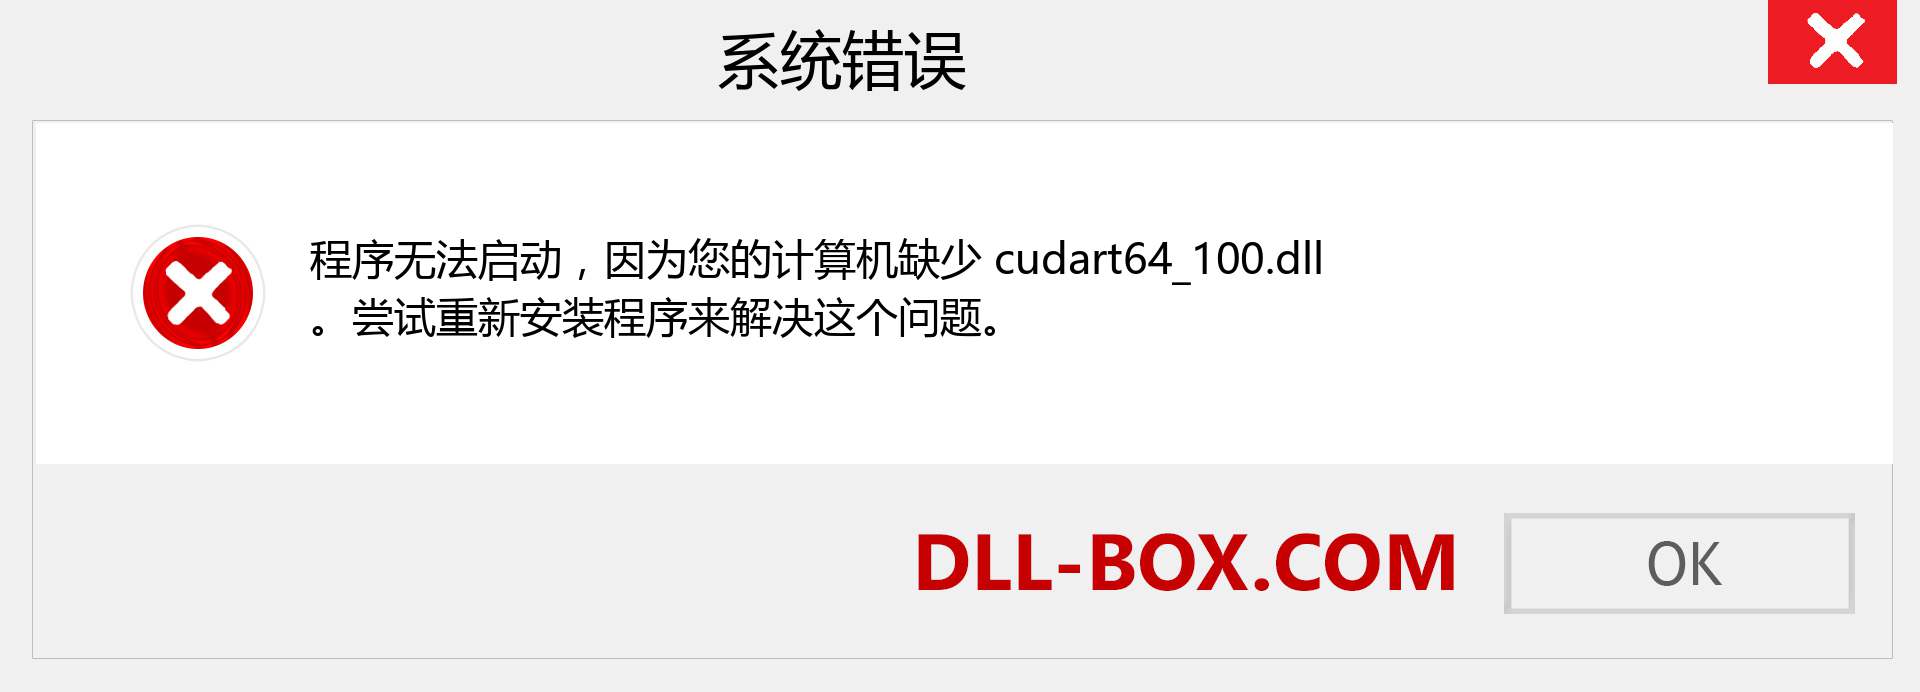 cudart64_100.dll 文件丢失？。 适用于 Windows 7、8、10 的下载 - 修复 Windows、照片、图像上的 cudart64_100 dll 丢失错误